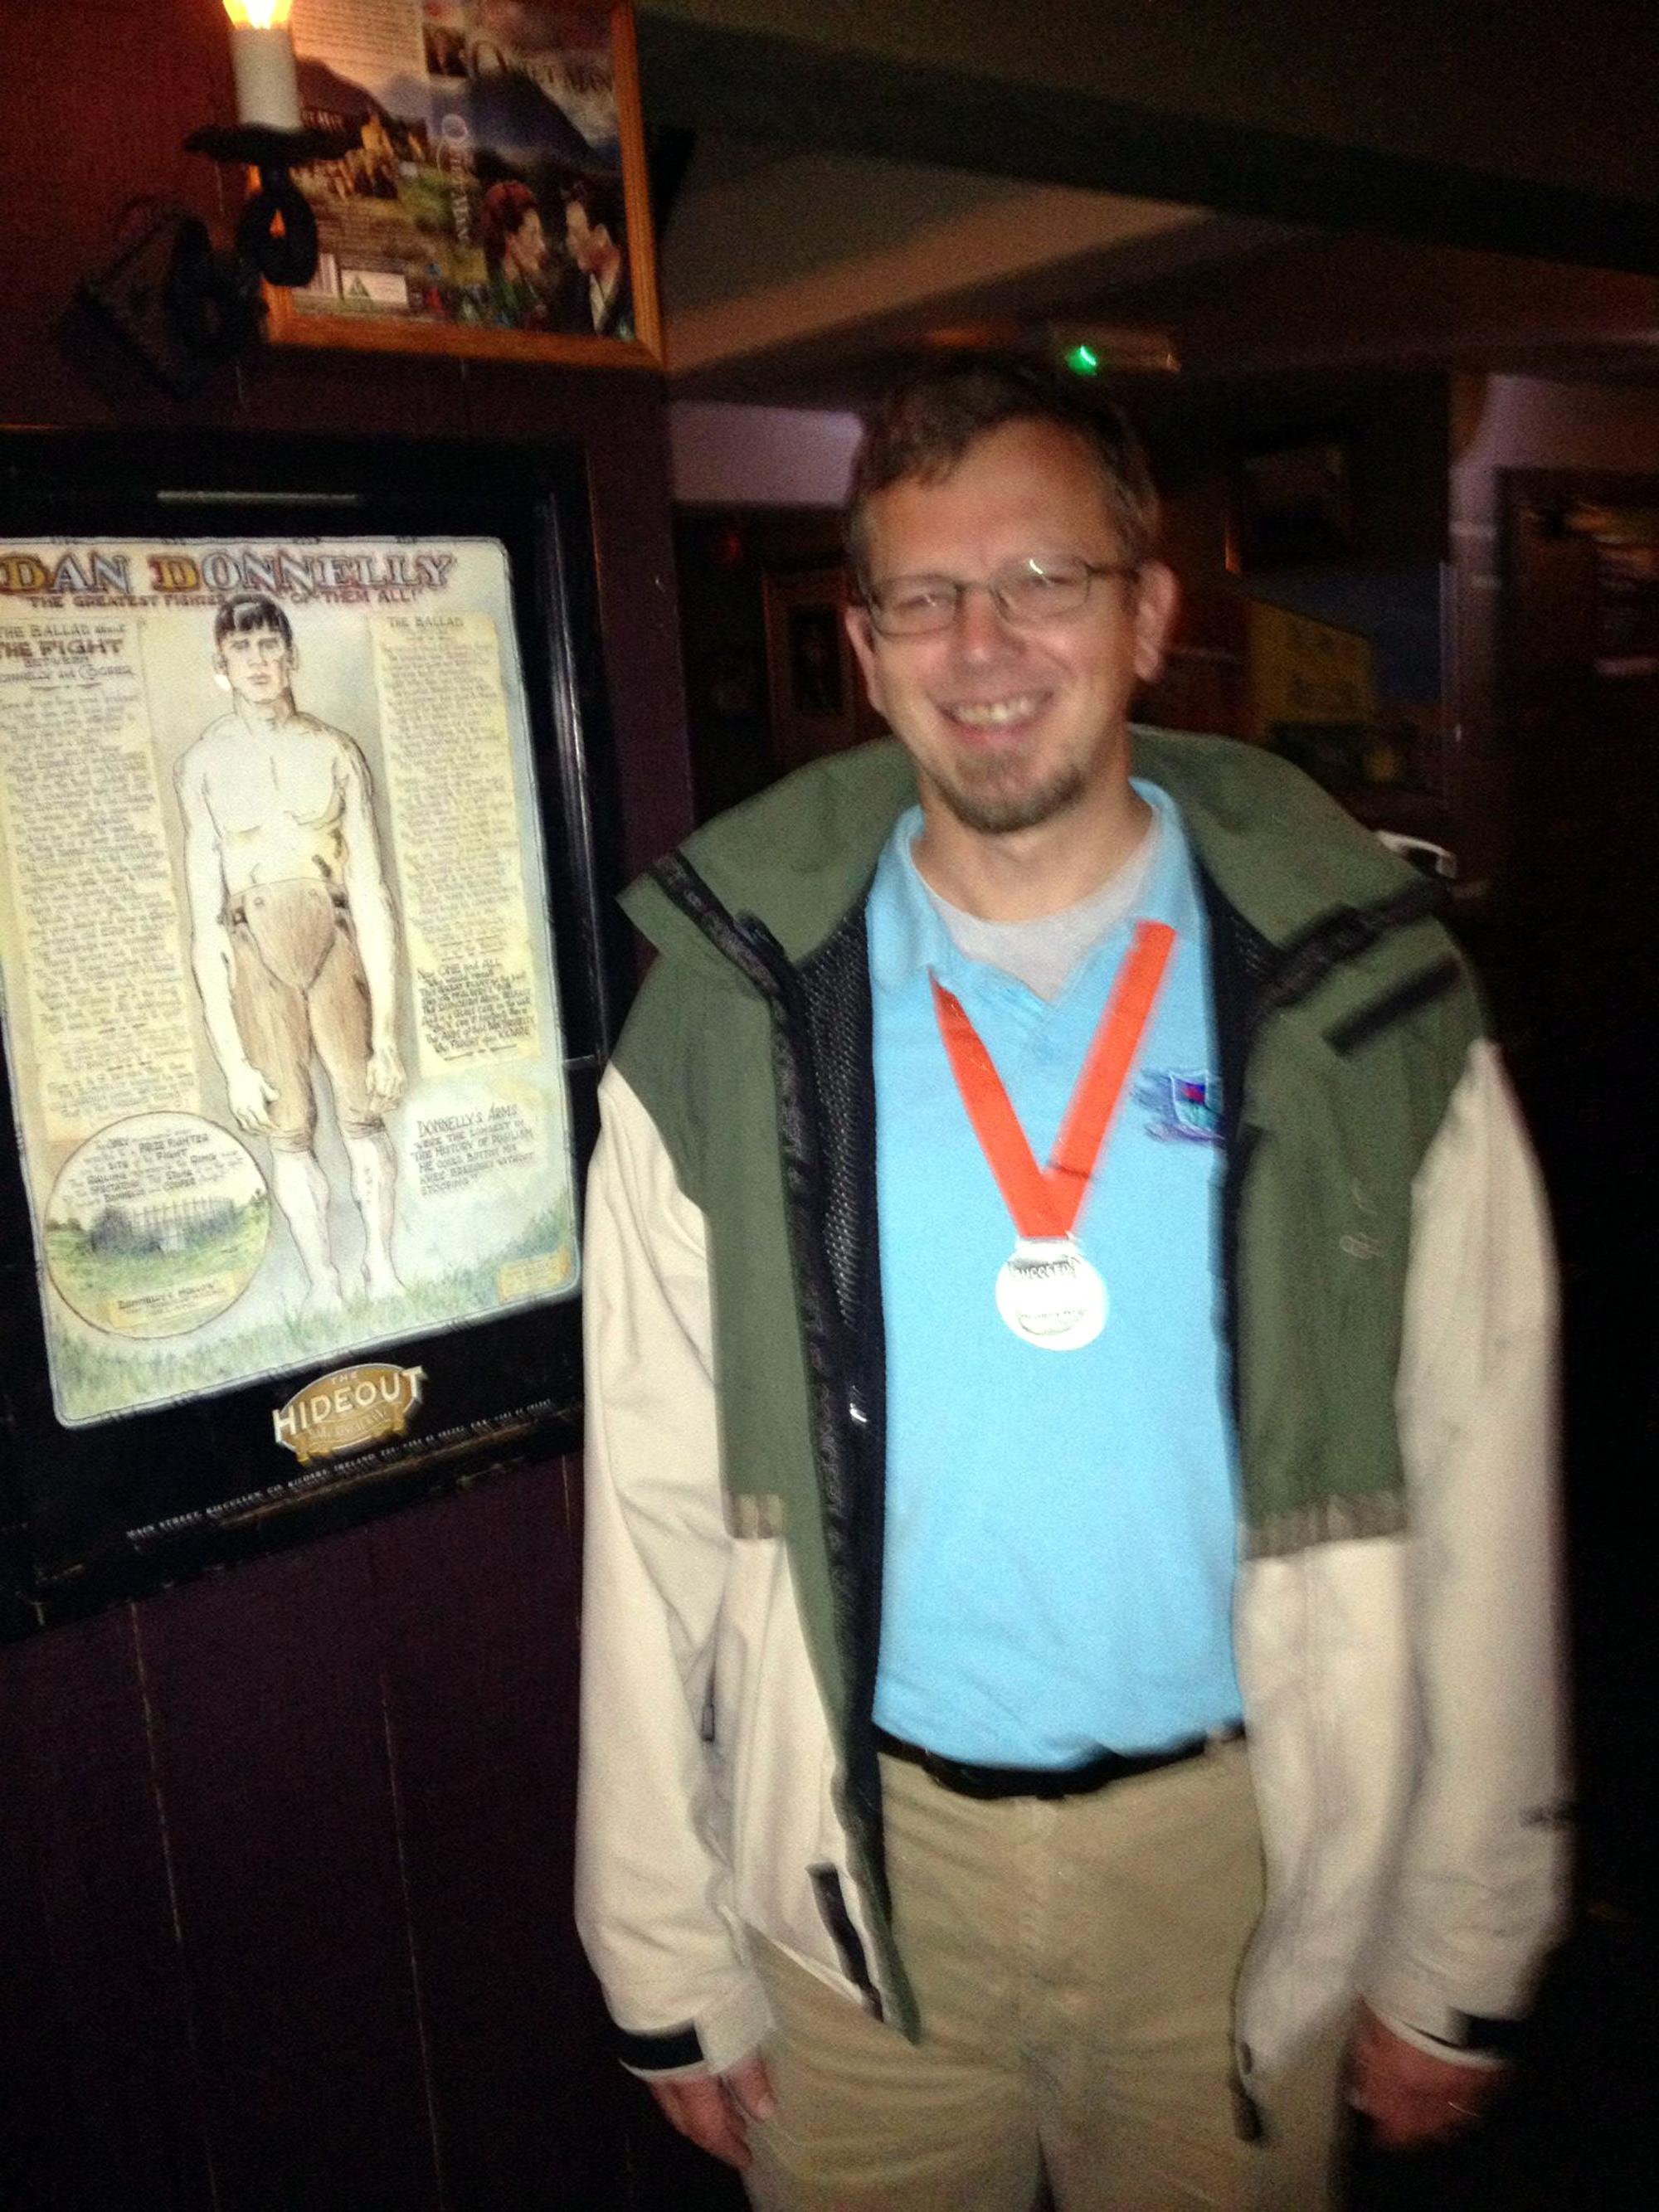 Boston Scientific (Belgium) - With Medal